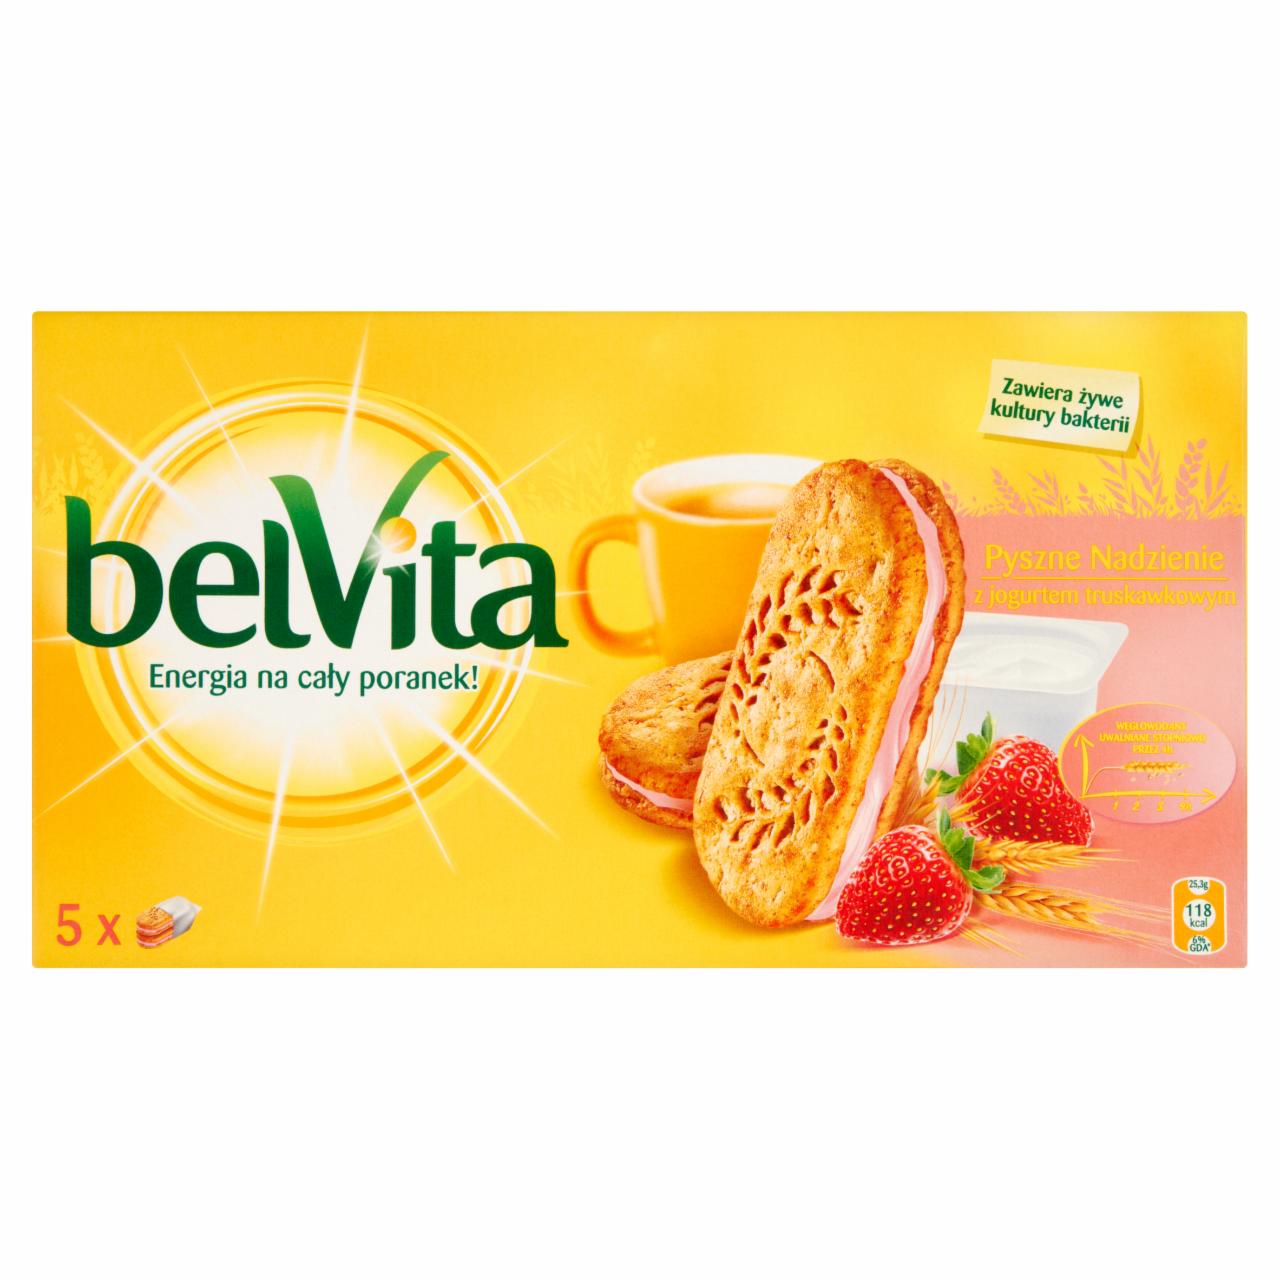 Zdjęcia - belVita Ciastka zbożowe z nadzieniem jogurtowo-truskawkowym 253 g (5 x 2 ciastka)